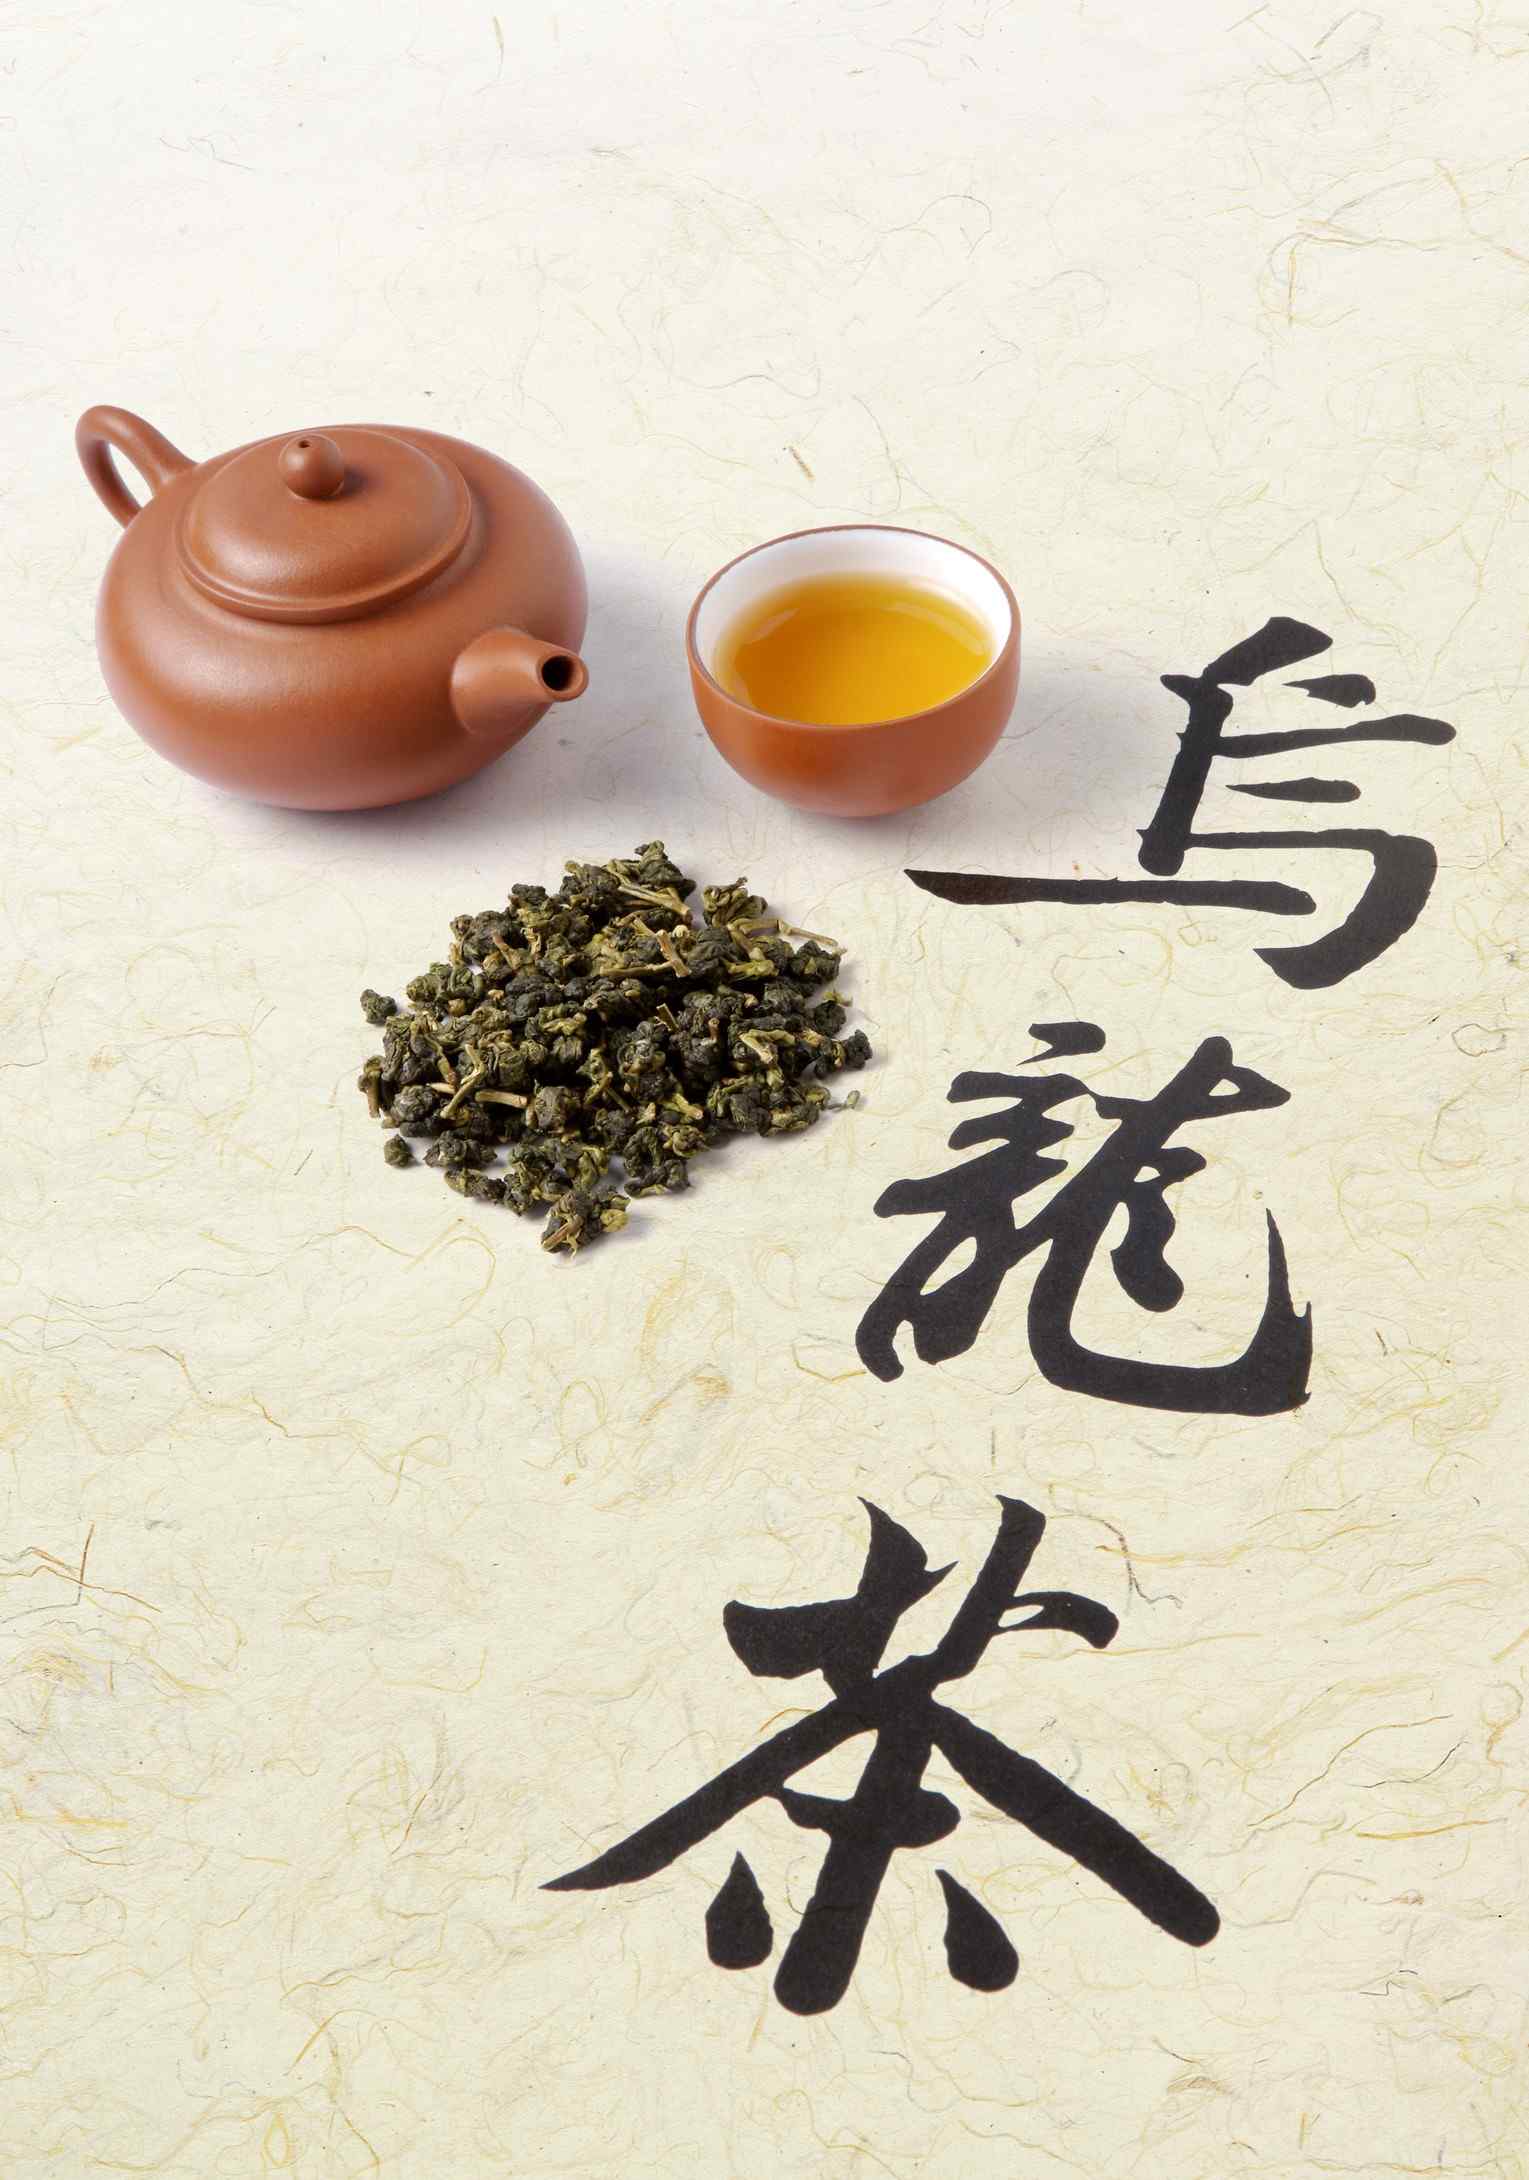 中国茶文化之青茶(乌龙茶)高清桌面壁纸